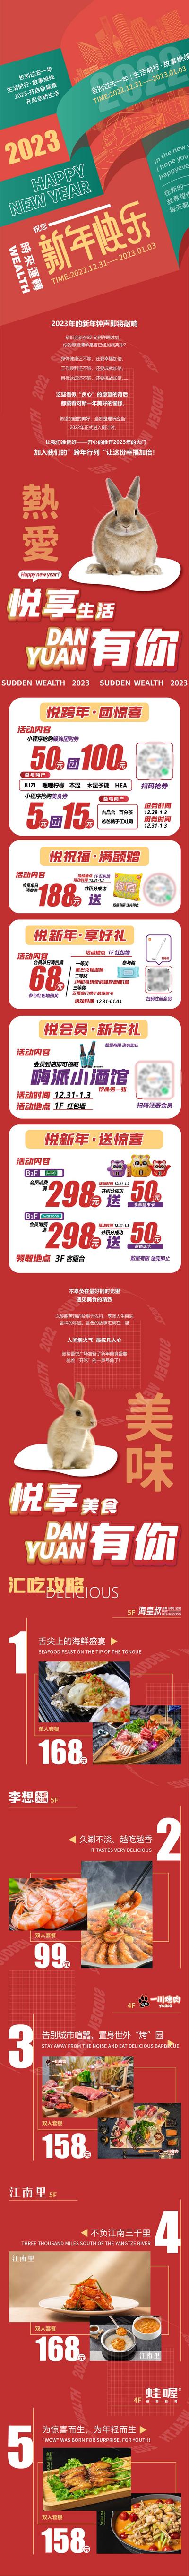 南门网 海报 长图 商业 购物中心 元旦 新年 活动 团券 优惠 促销